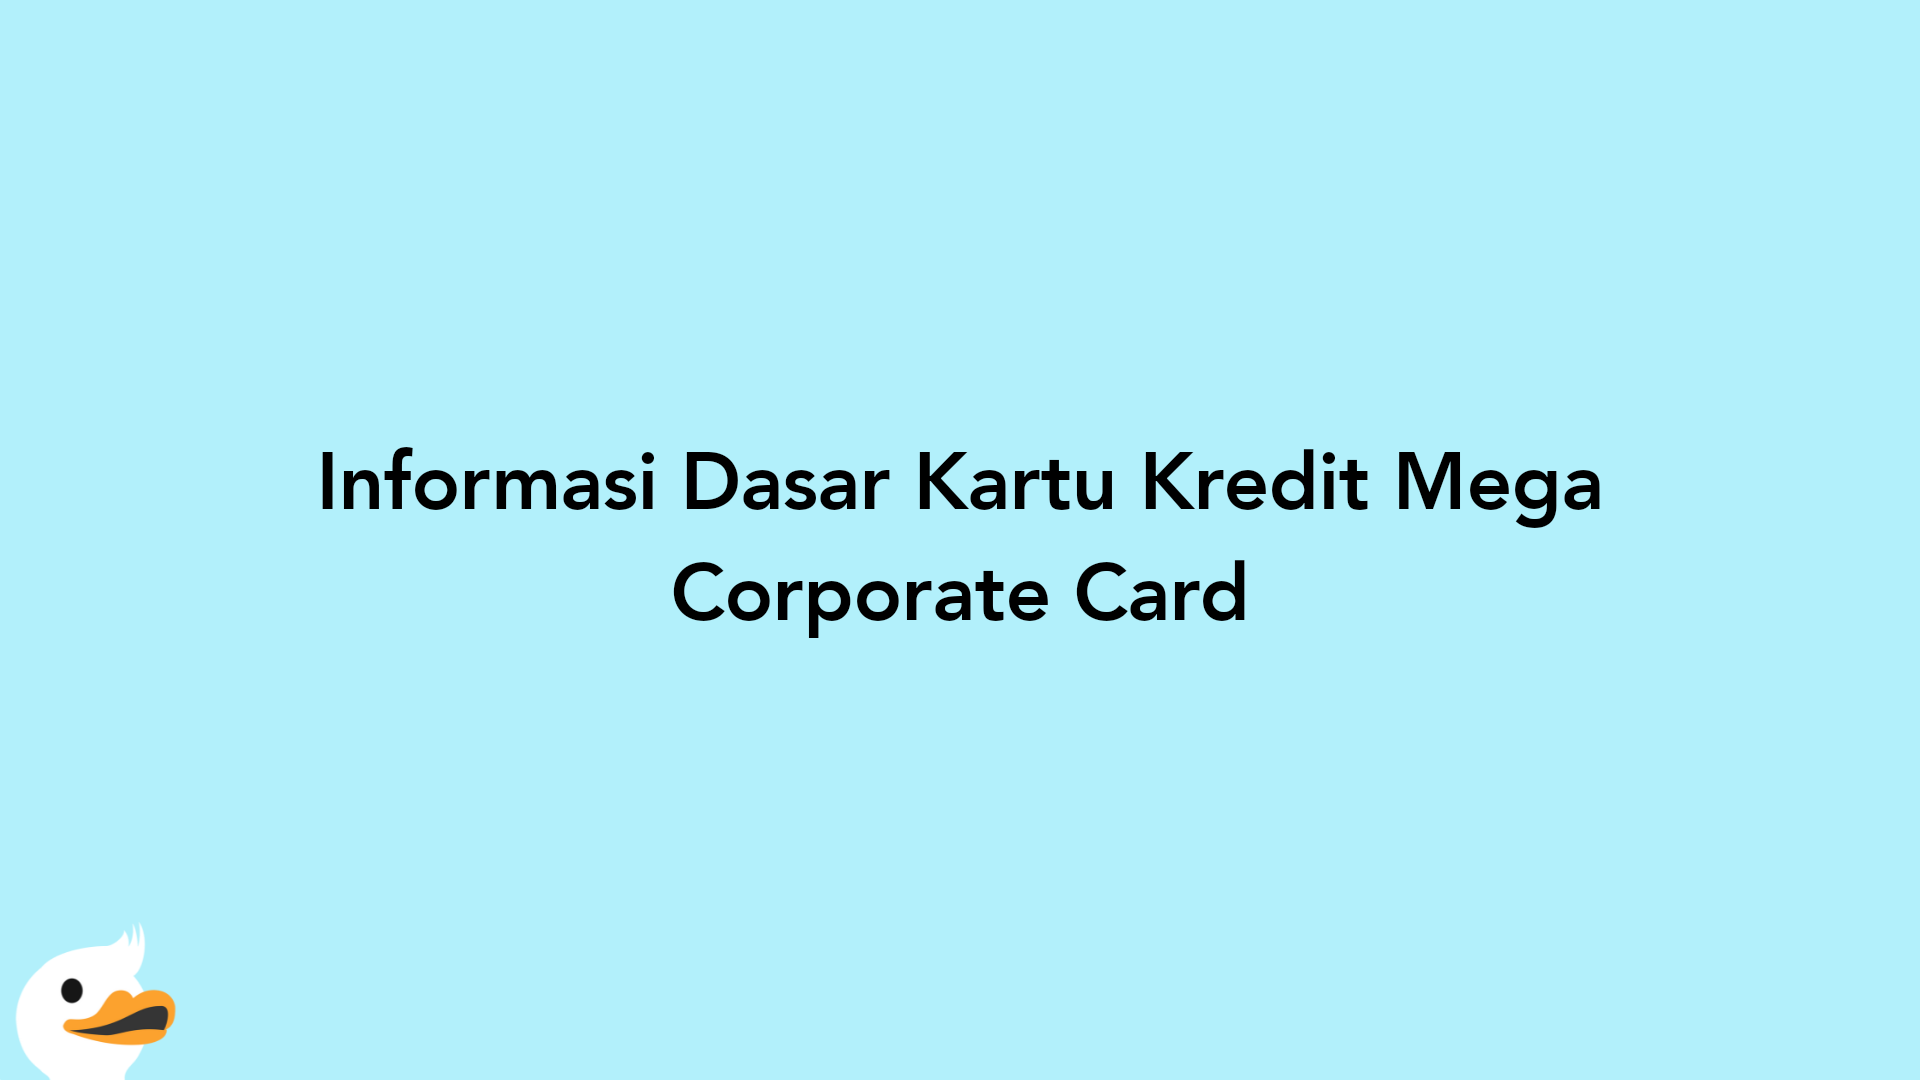 Informasi Dasar Kartu Kredit Mega Corporate Card